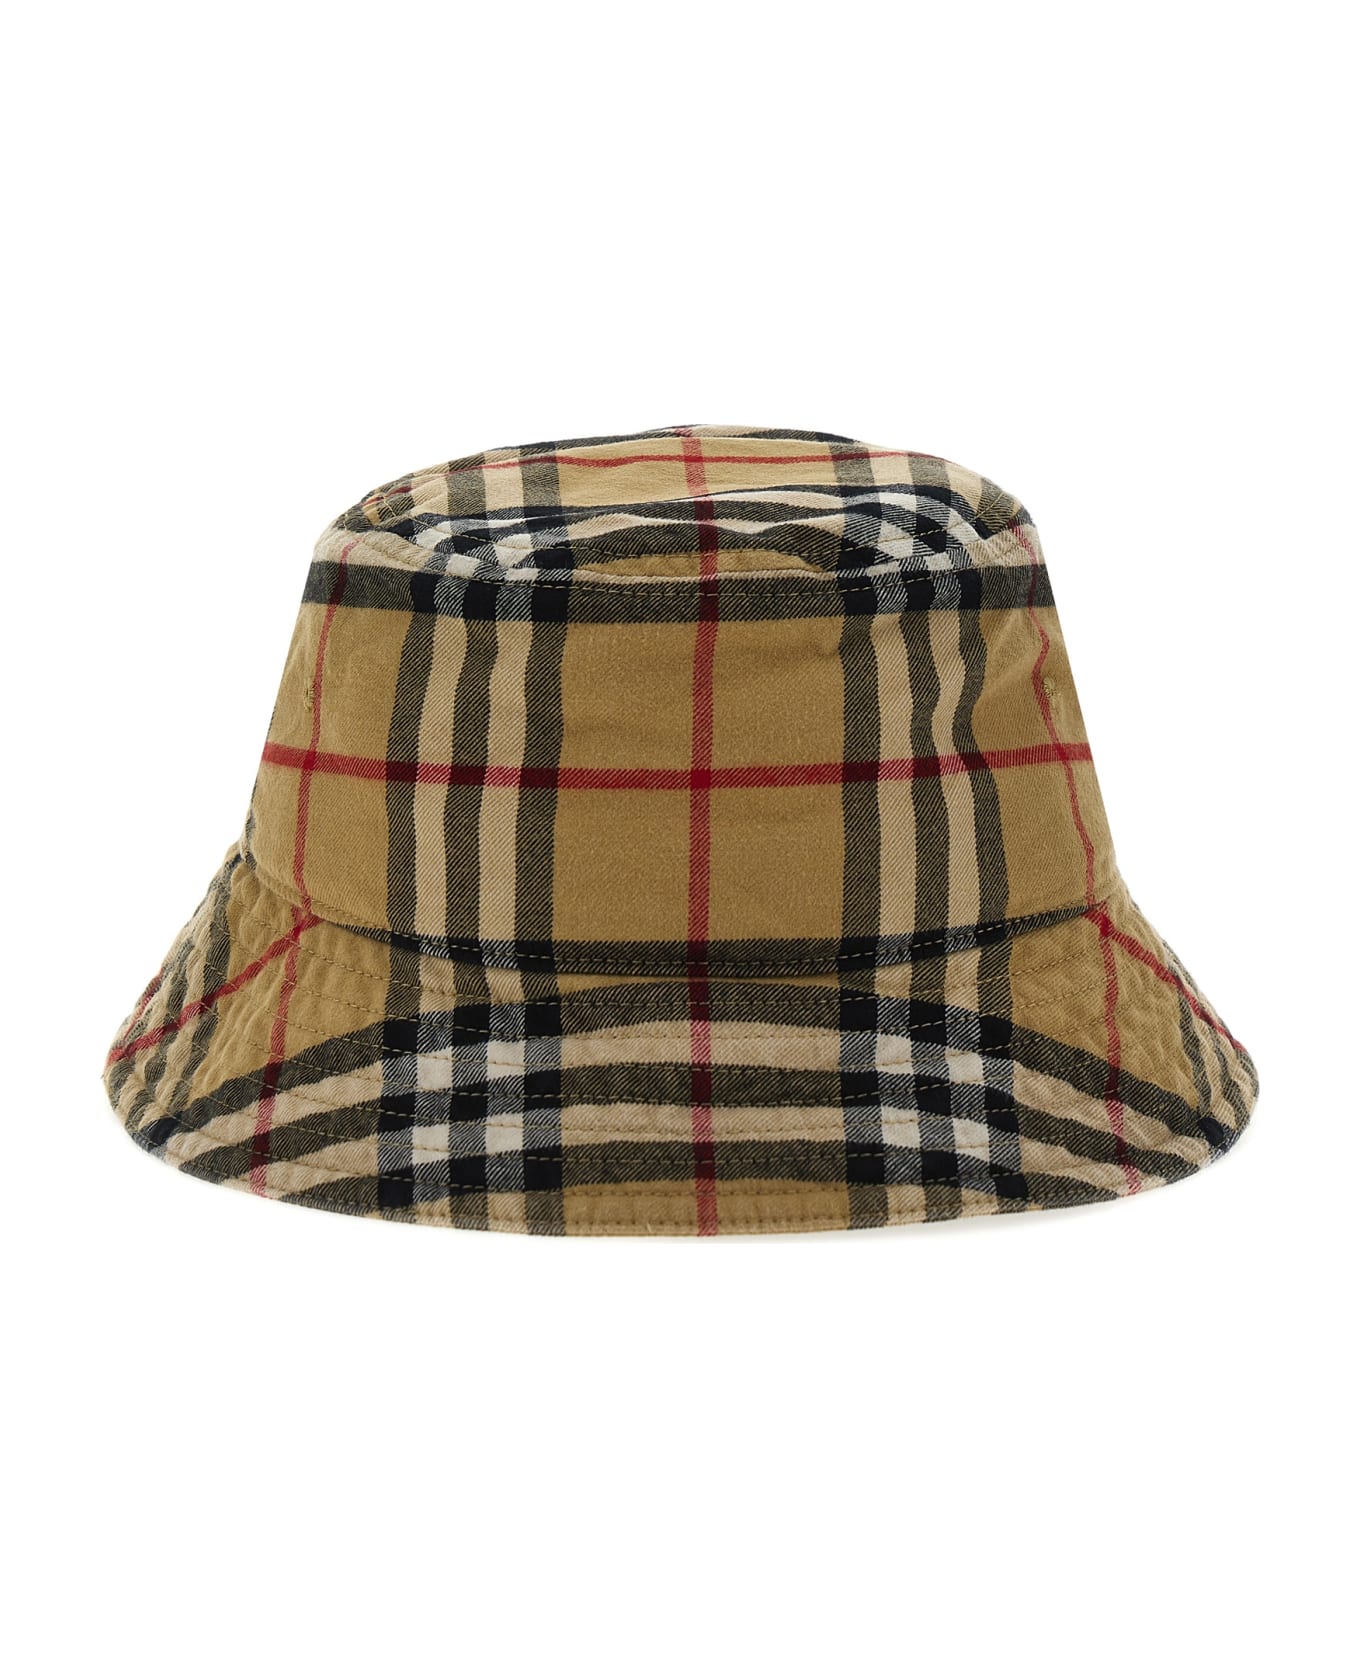 Burberry Bucket Hat Check - Beige